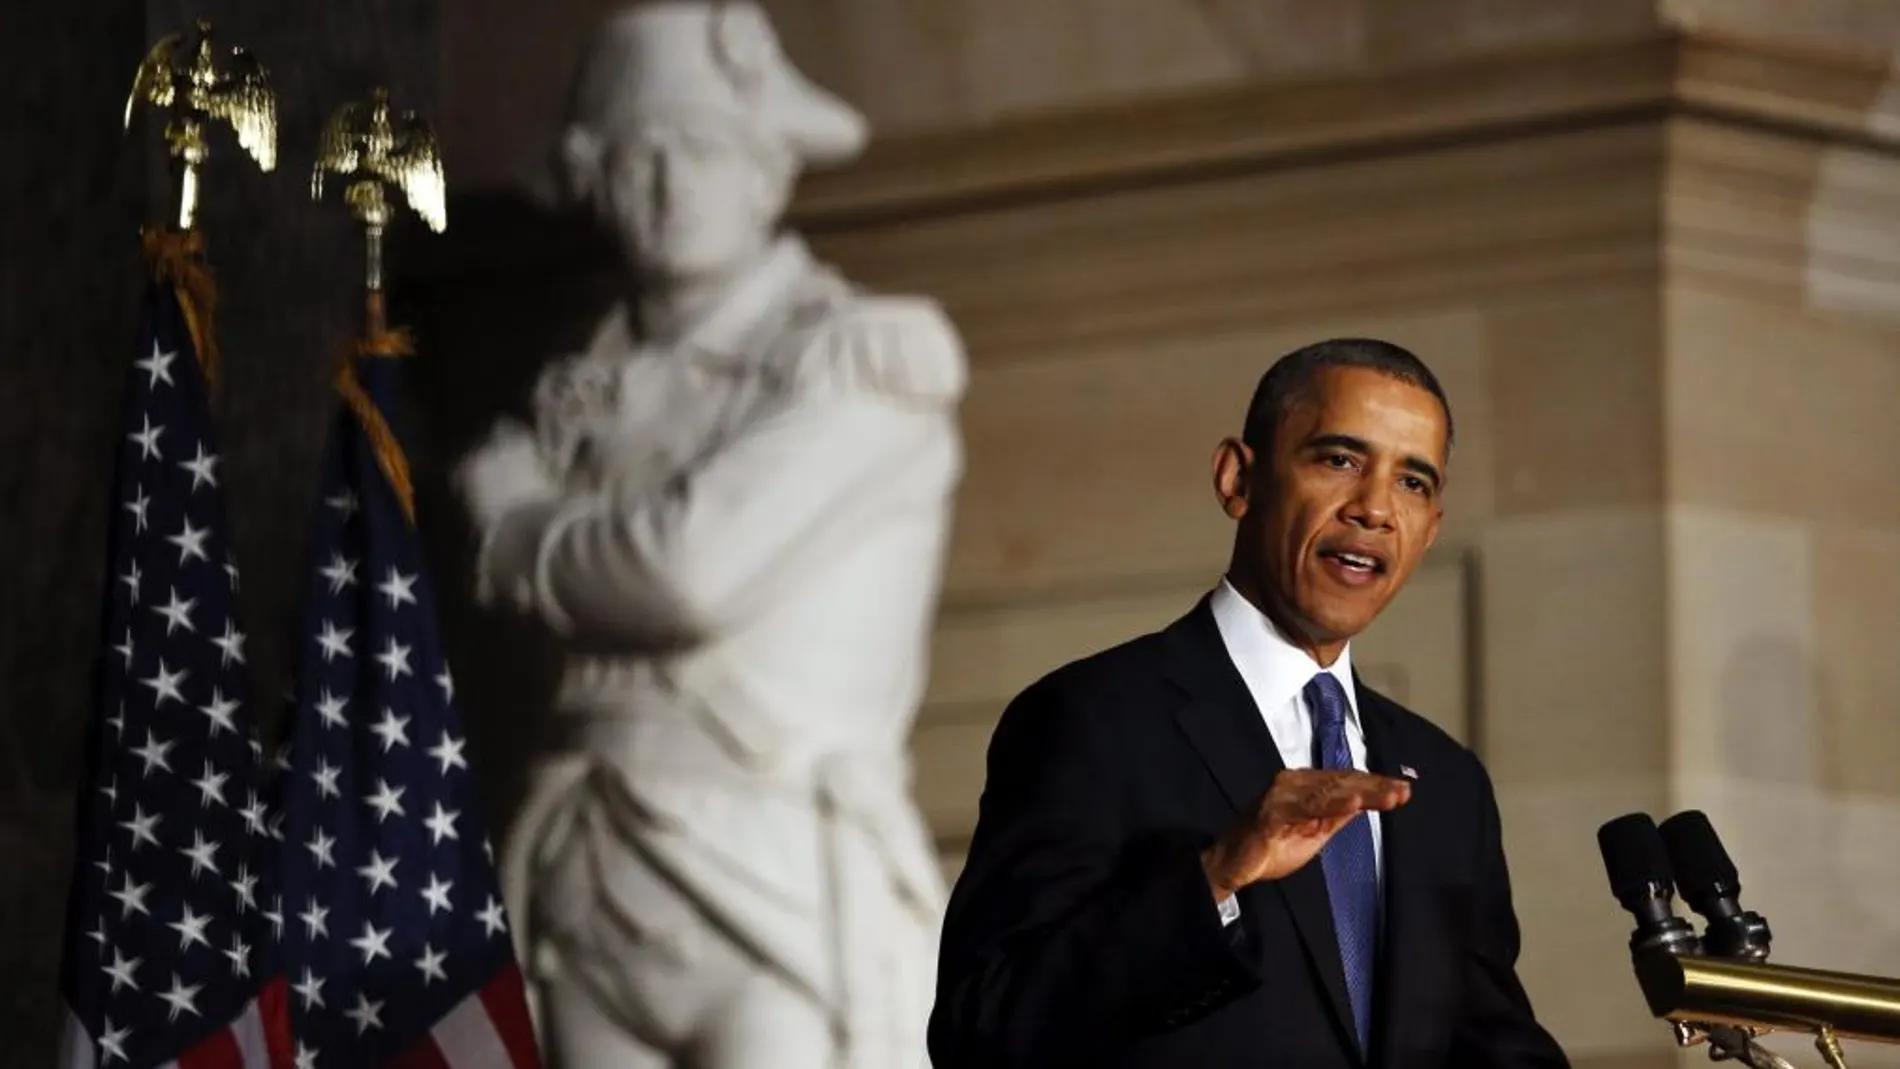 El presidente de Estados Unidos, Barack Obama, da un discurso durante una ceremonia en memoria del expresidente demócrata de la Cámara Baja de EEUU Thomas Foley en el Capitolio, en Washington DC (Estados Unidos) el 29 de octubre de 2013.